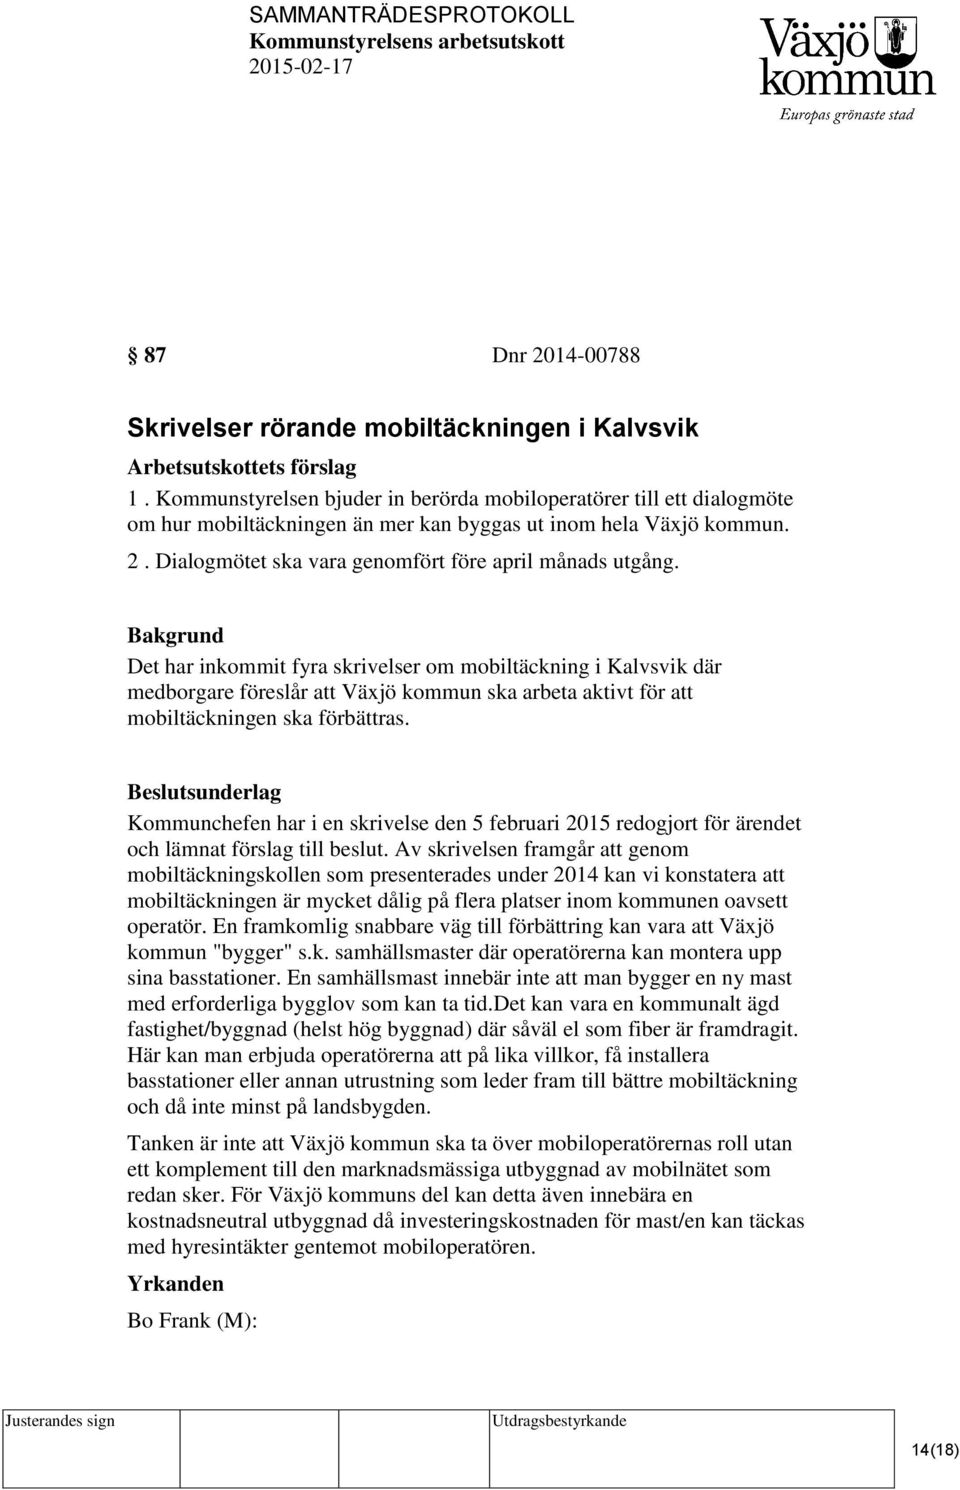 Det har inkommit fyra skrivelser om mobiltäckning i Kalvsvik där medborgare föreslår att Växjö kommun ska arbeta aktivt för att mobiltäckningen ska förbättras.